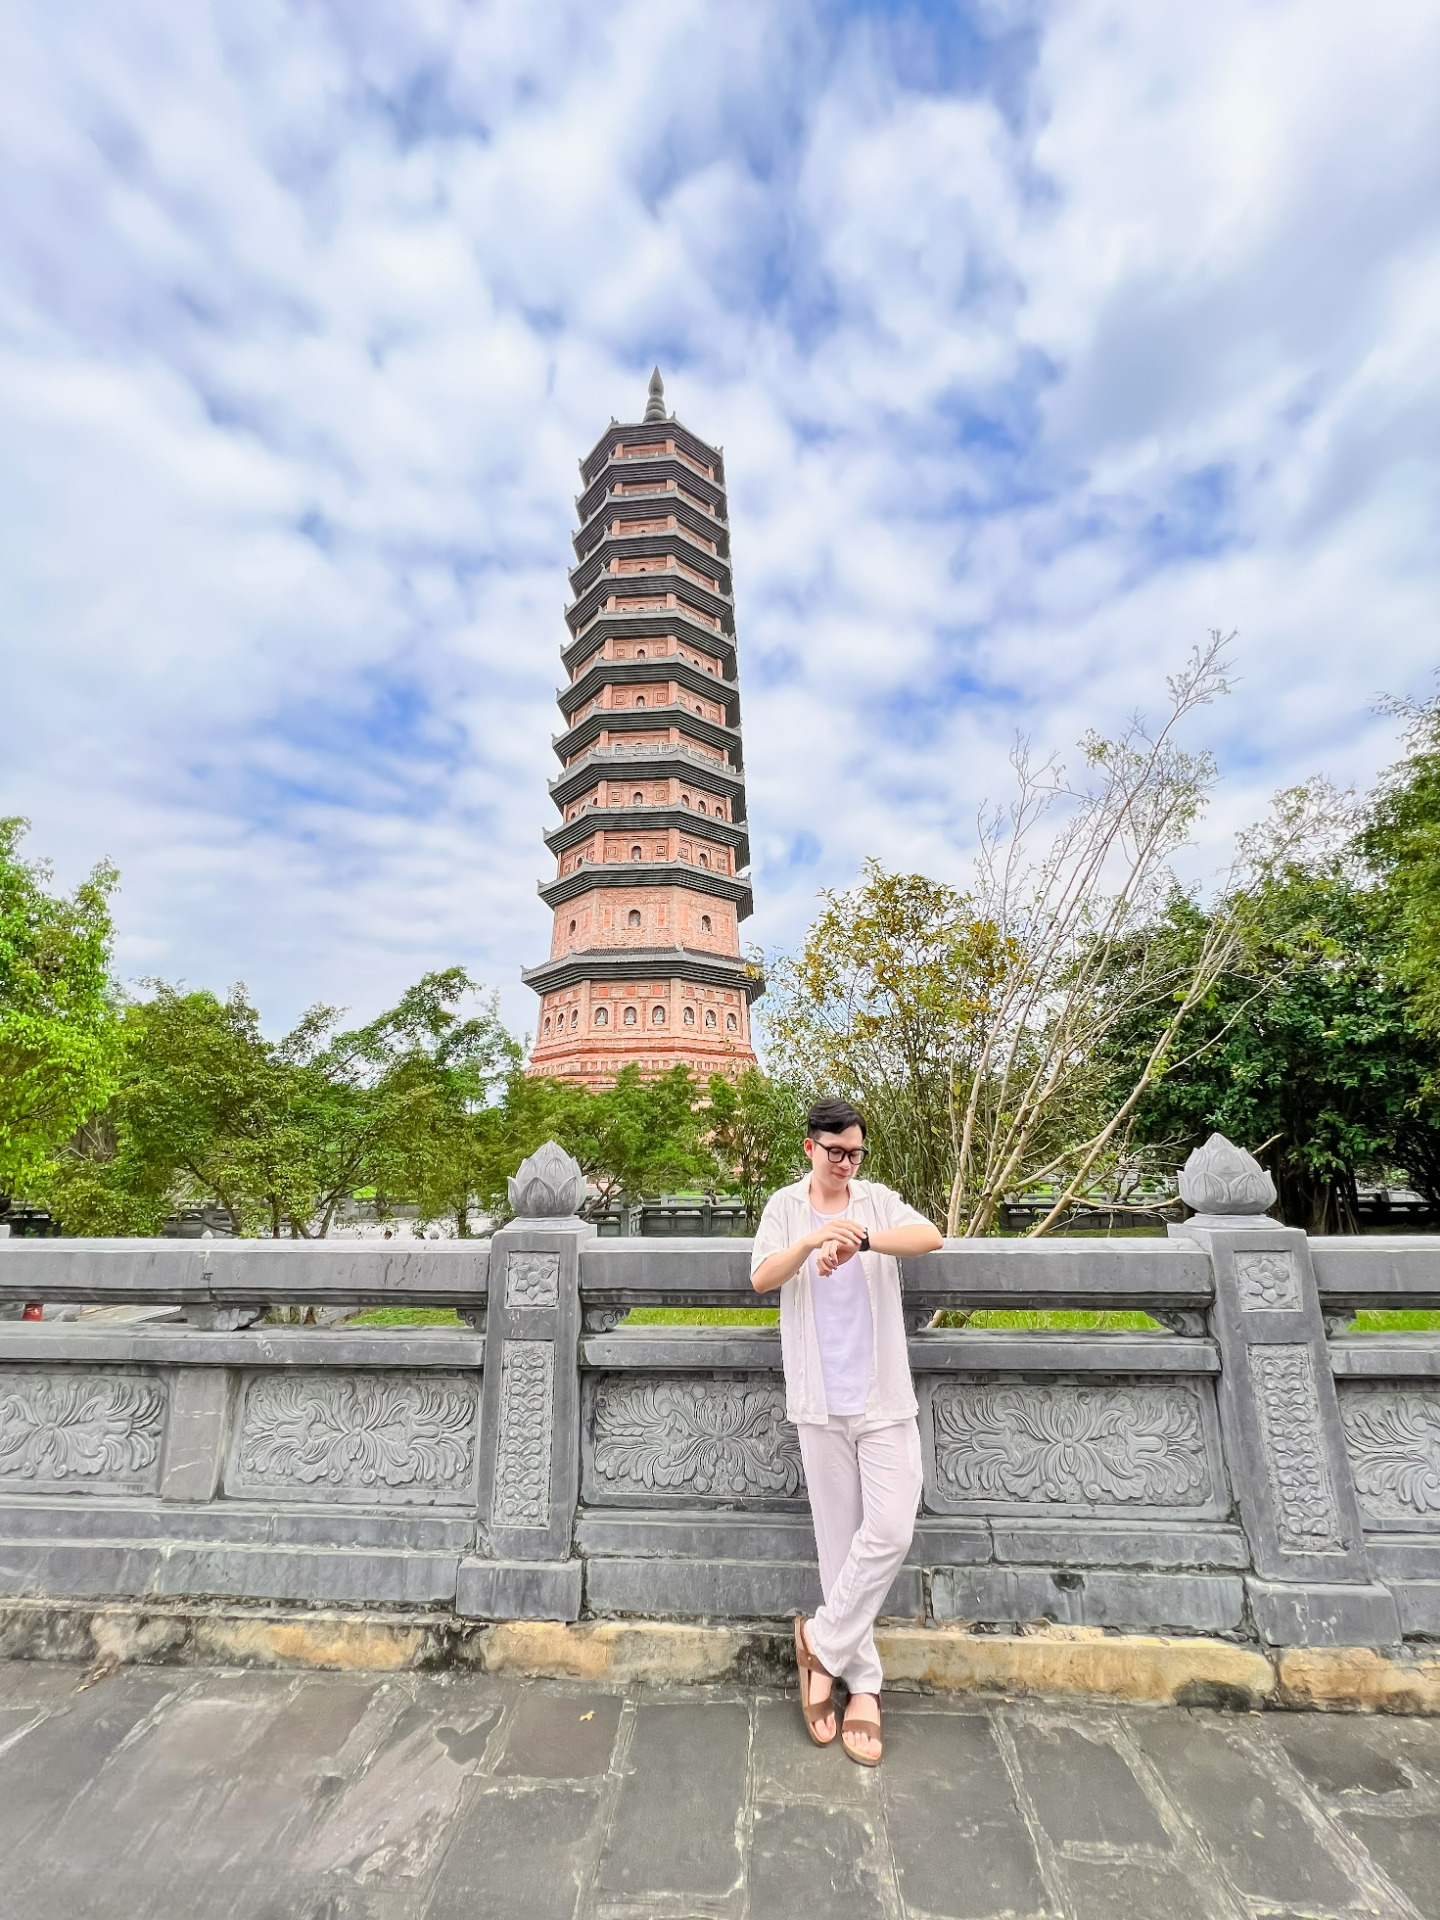 Địa điểm cuối cùng anh Đức ghé thăm khi tới Ninh Bình mà chùa Bái Đính. Chùa khá rộng nên du khách có thể lựa chọn thuê xe điện sẽ thuận tiện hơn cho việc di chuyển. Kiến trúc đẹp nhất tại đây là bảo tháp cao nhất Châu Á. 